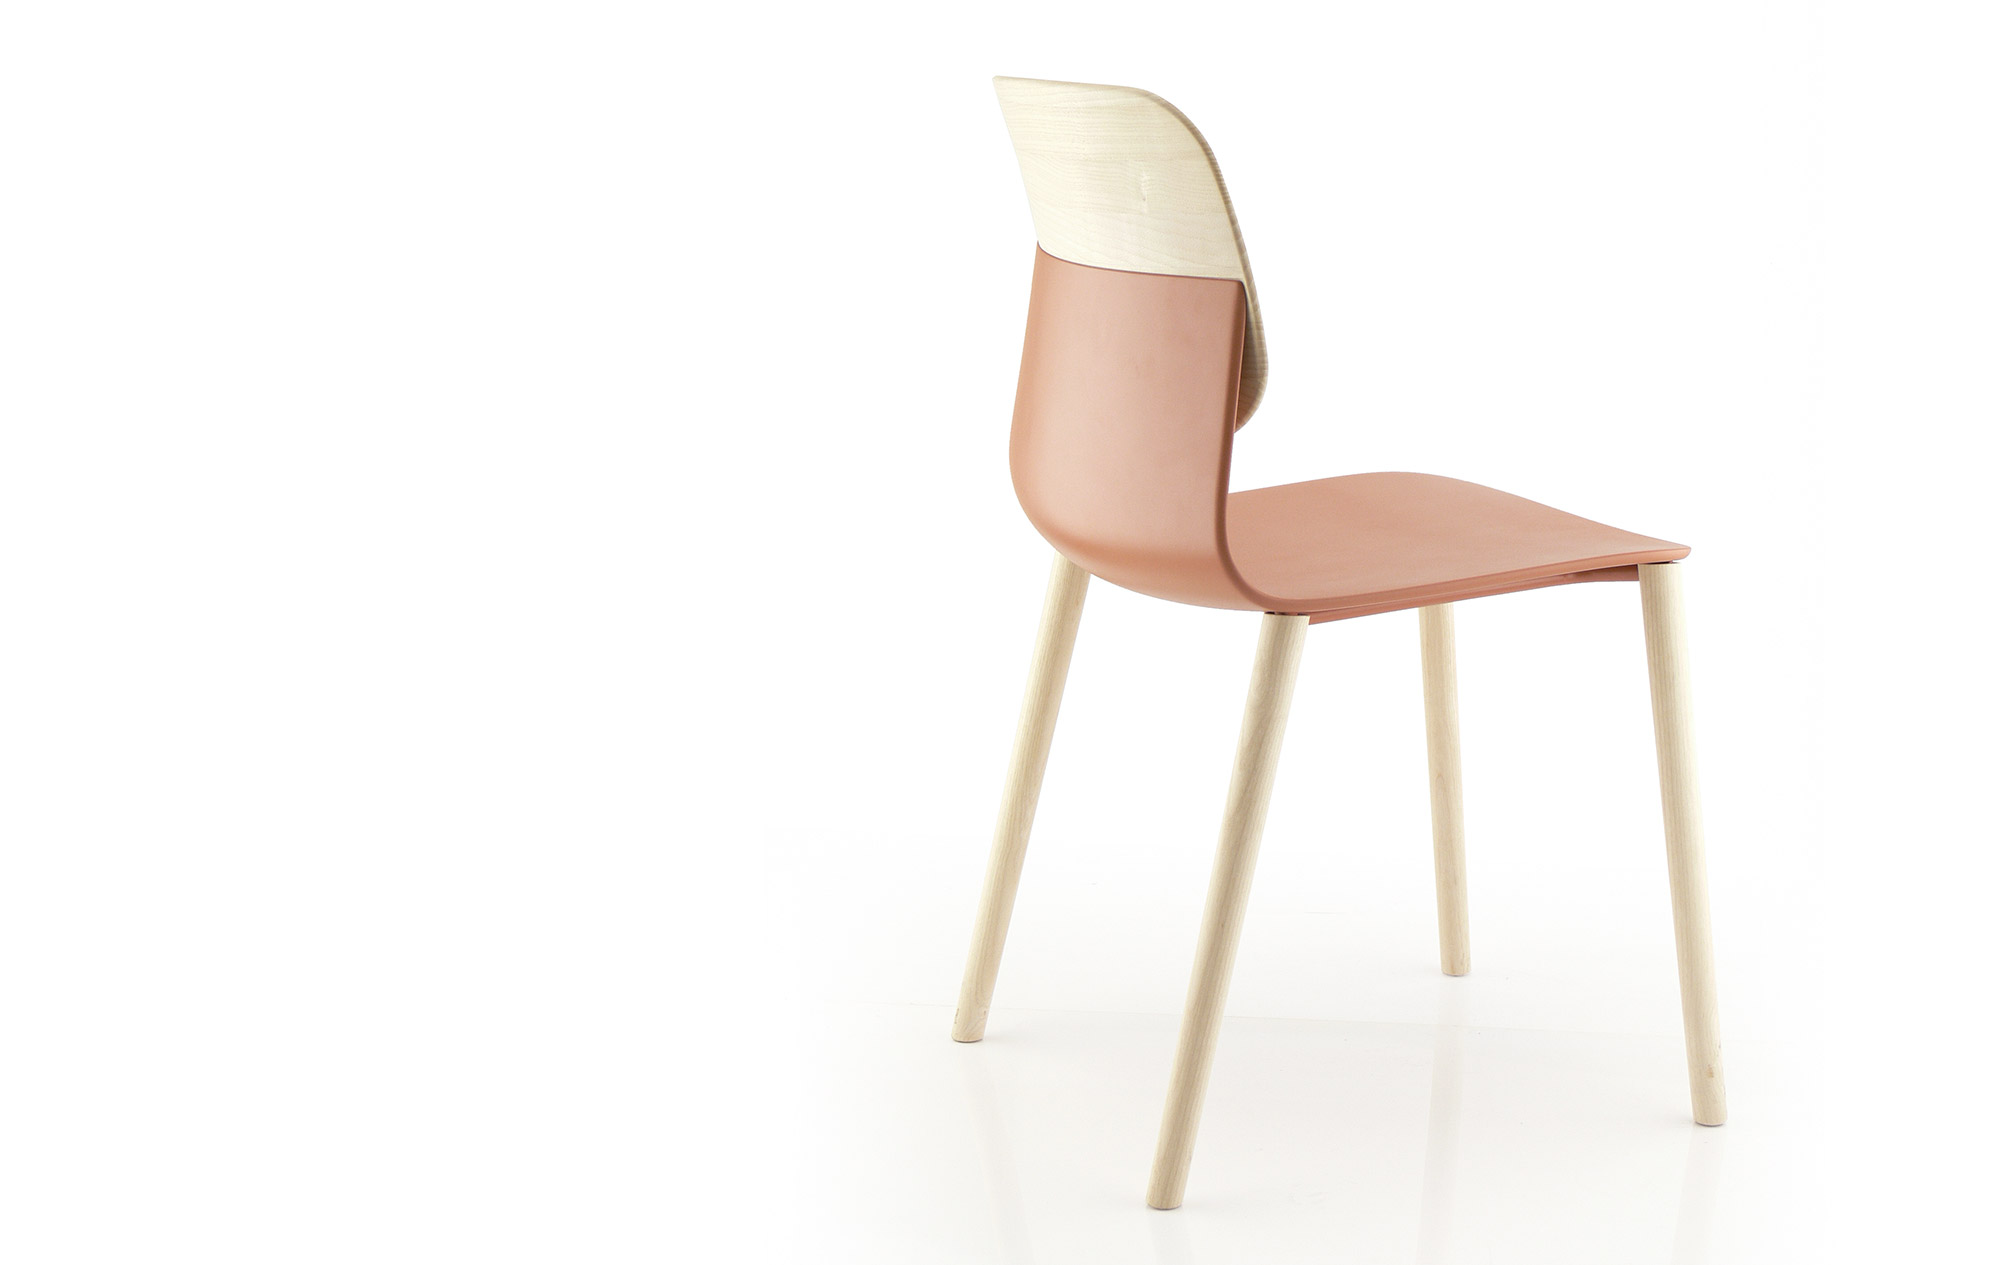 sokoa-design-desk-chair-klik-iratzoki-lizaso